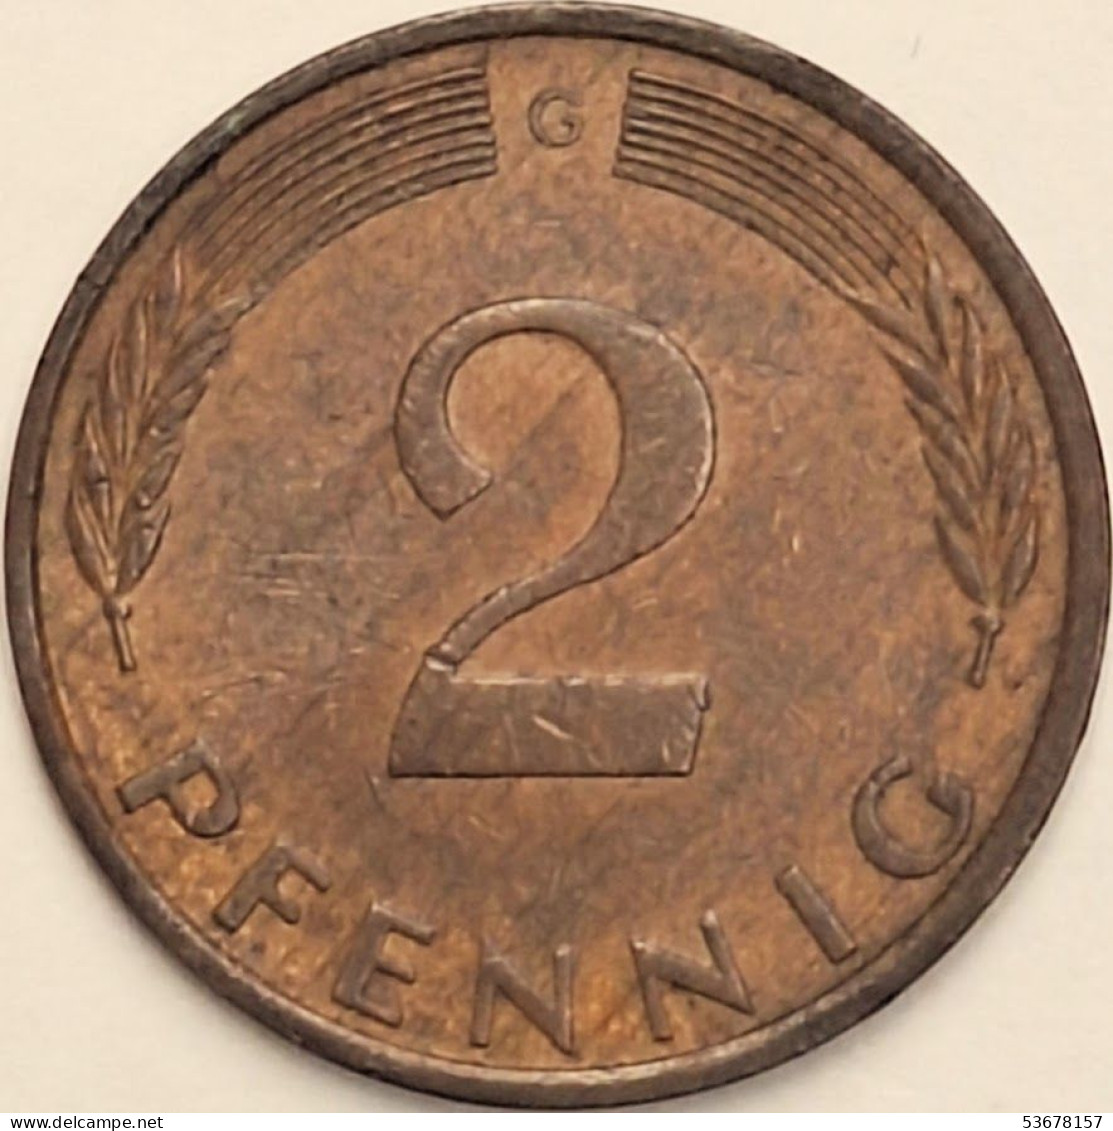 Germany Federal Republic - 2 Pfennig 1975 G, KM# 106a (#4527) - 2 Pfennig